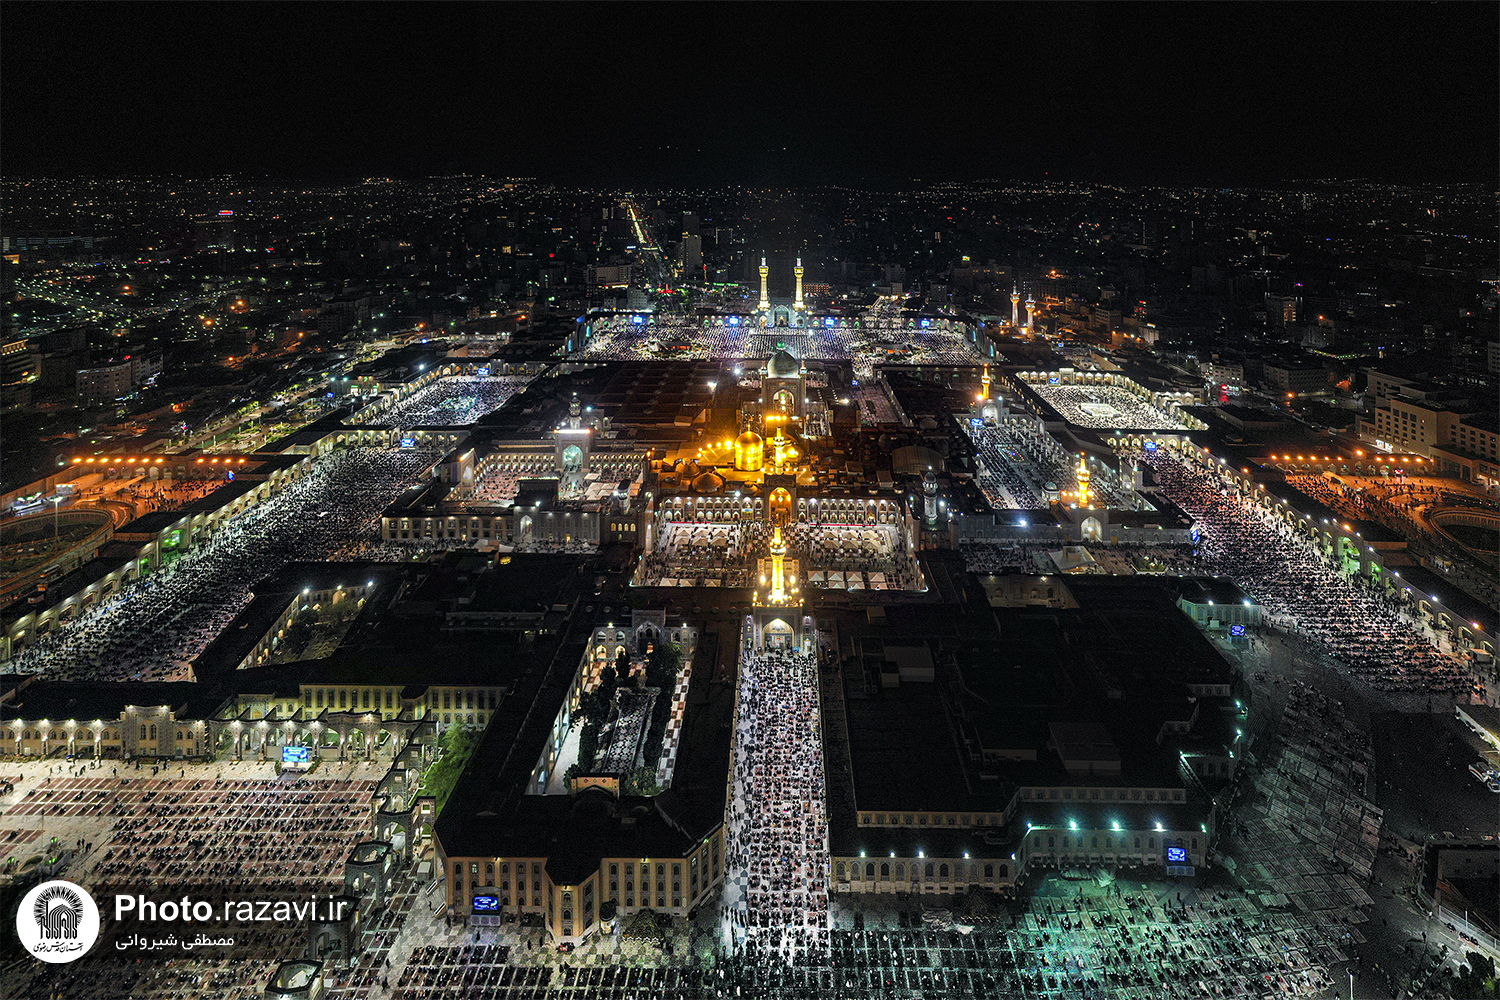 عکس با کیفیت : تصویر هوایی از مراسم شب قدر در حرم امام رضا علیه السلام